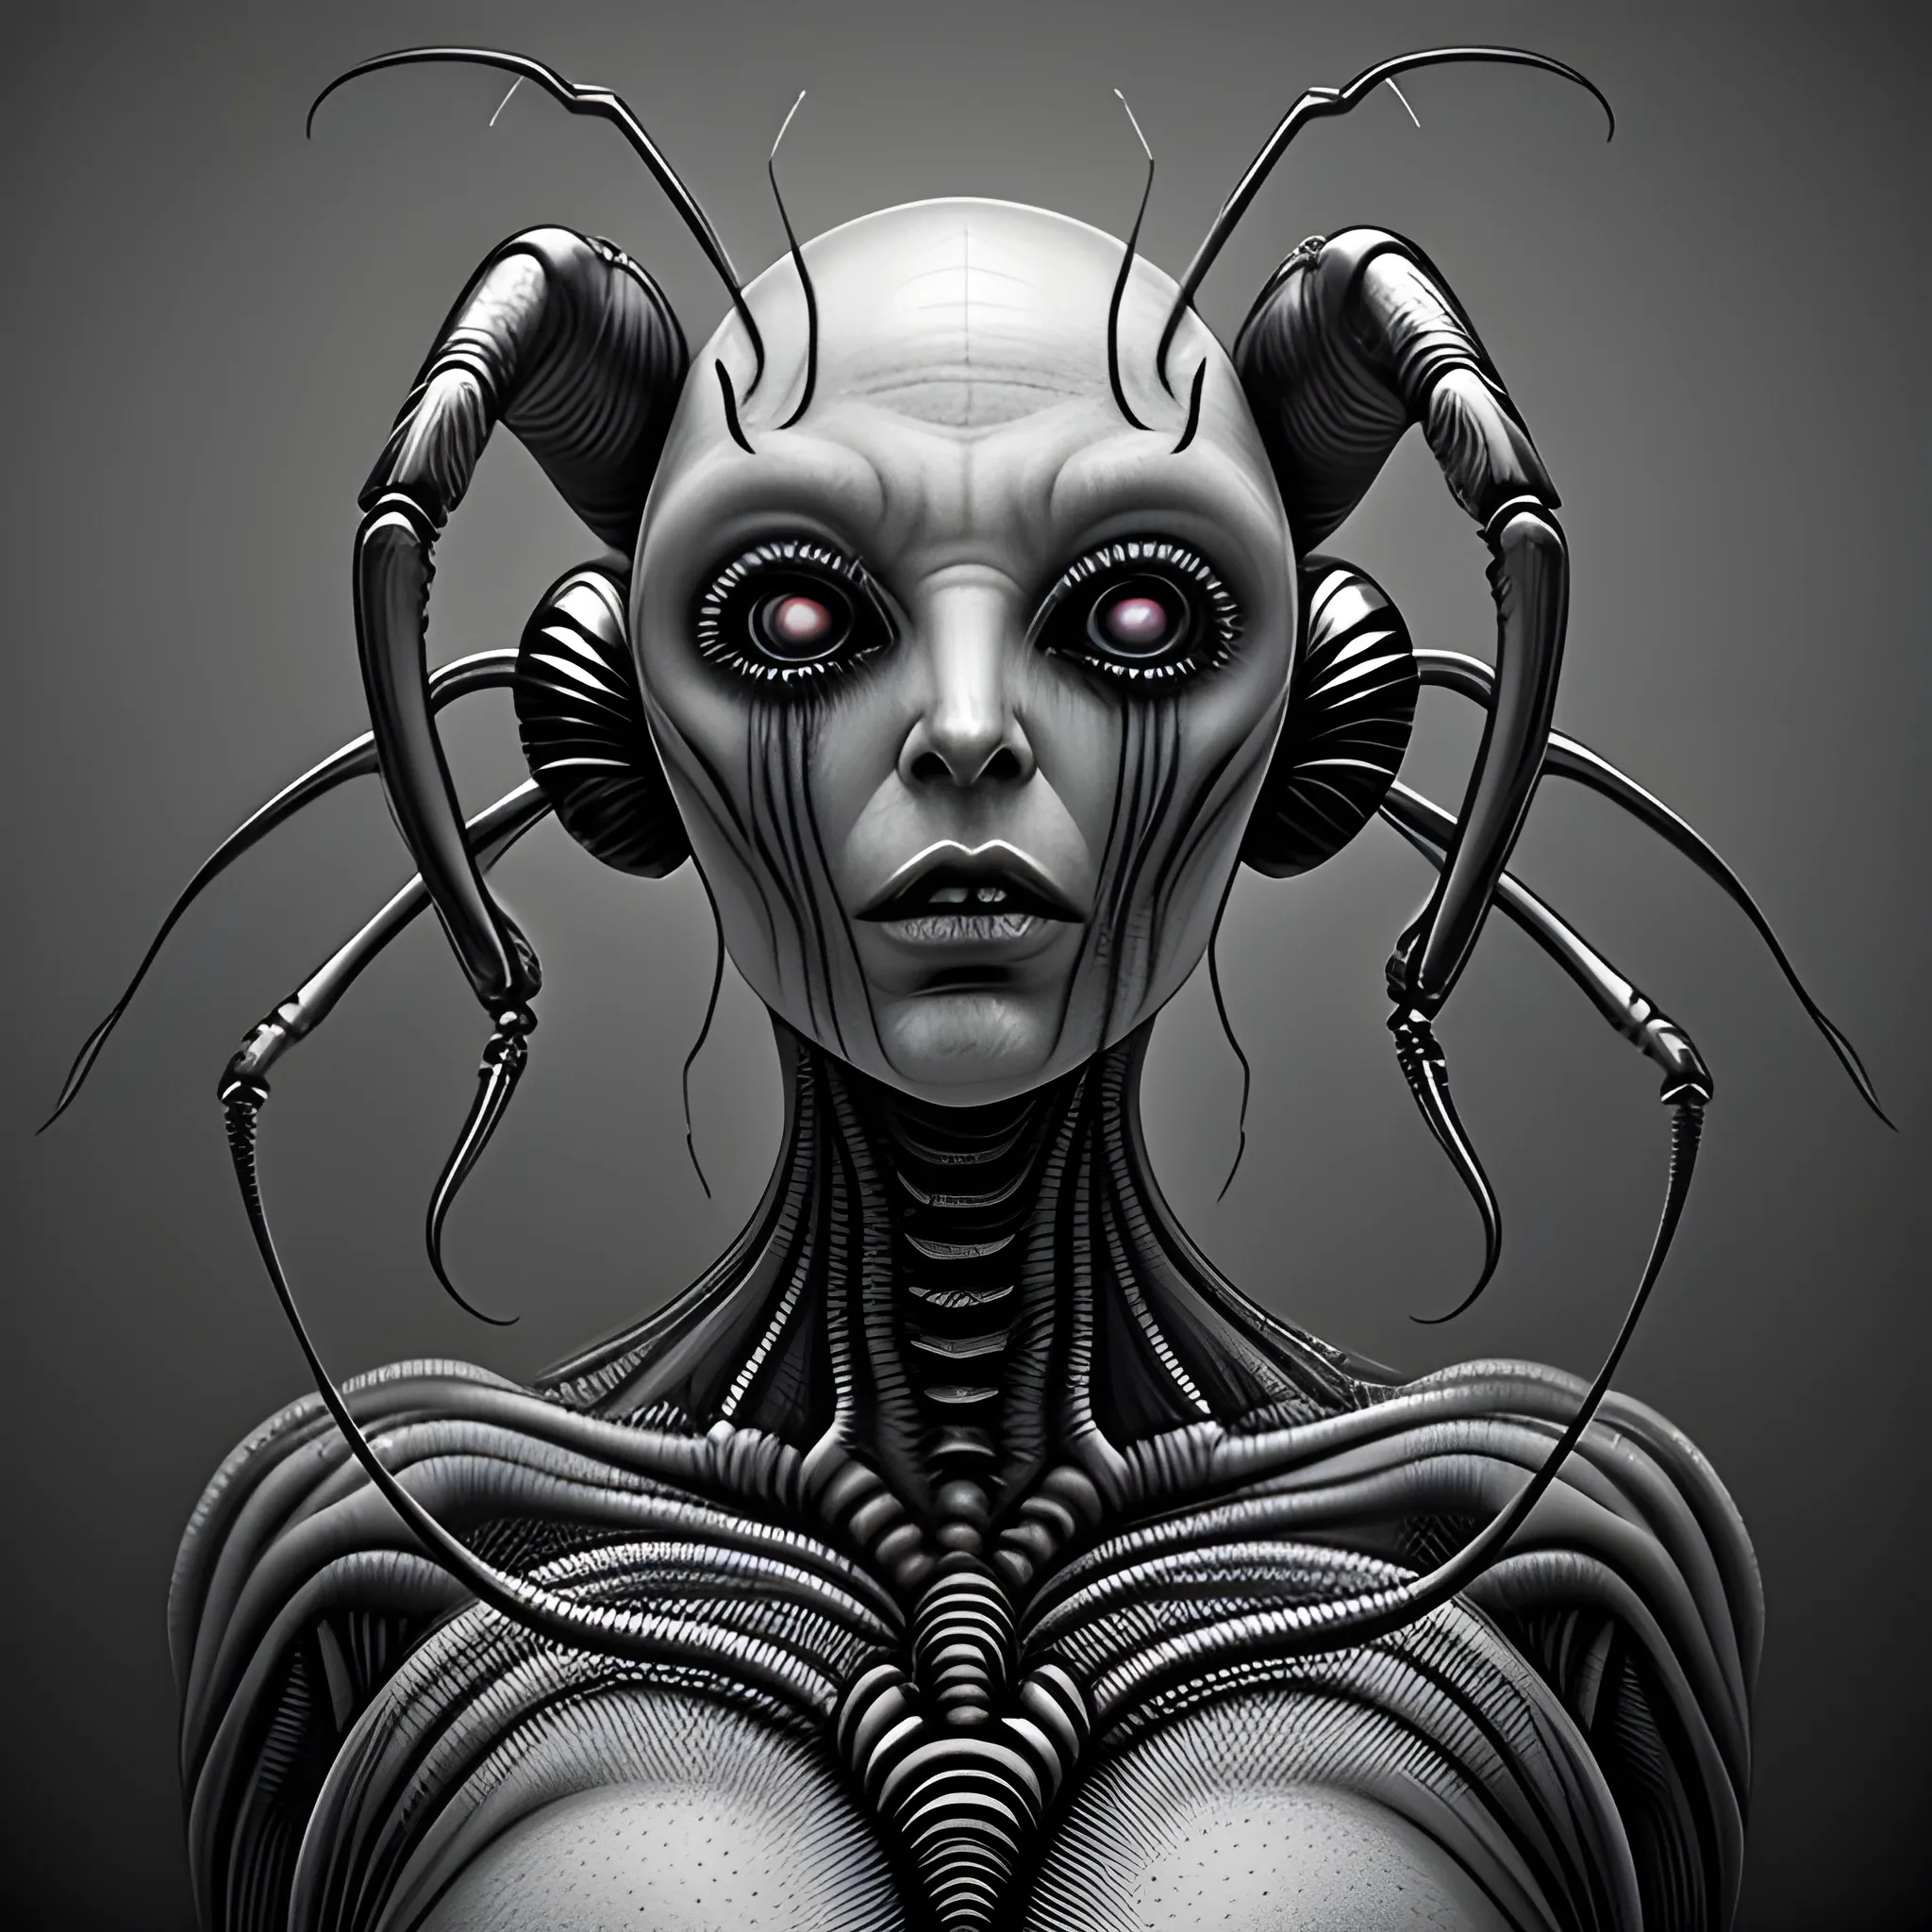 dreamlikeart profile portrait HR Giger style alien female, detai ...